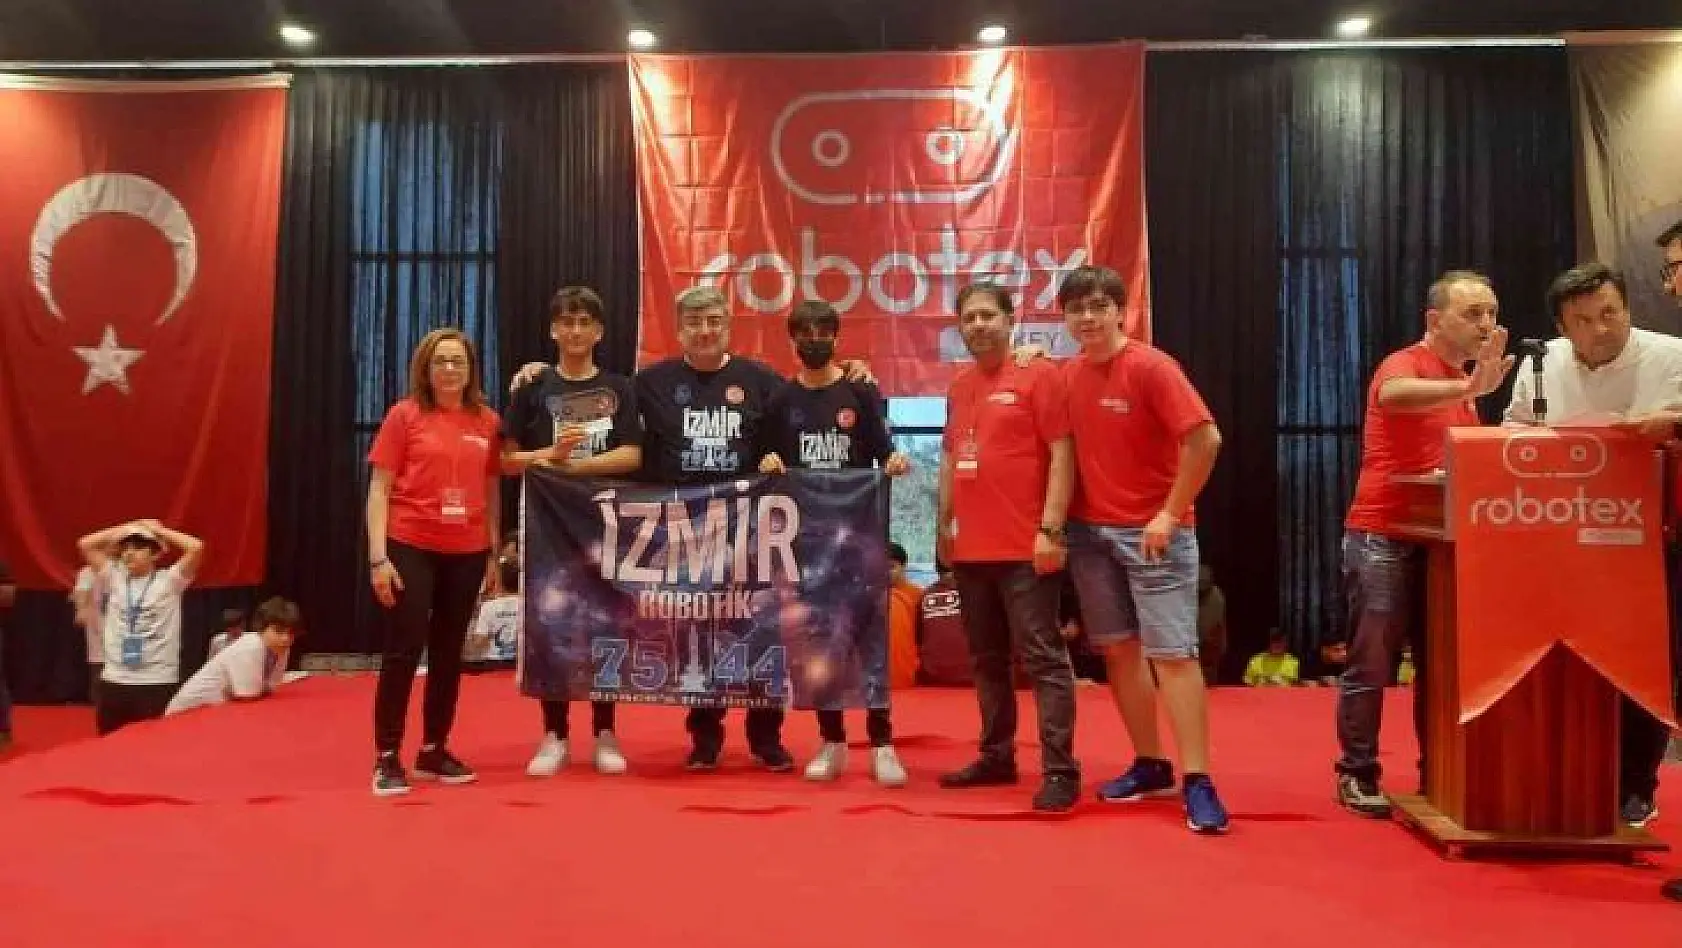 İzmirli öğrenciler Robotex Turkey'de 3 madalya kazandı